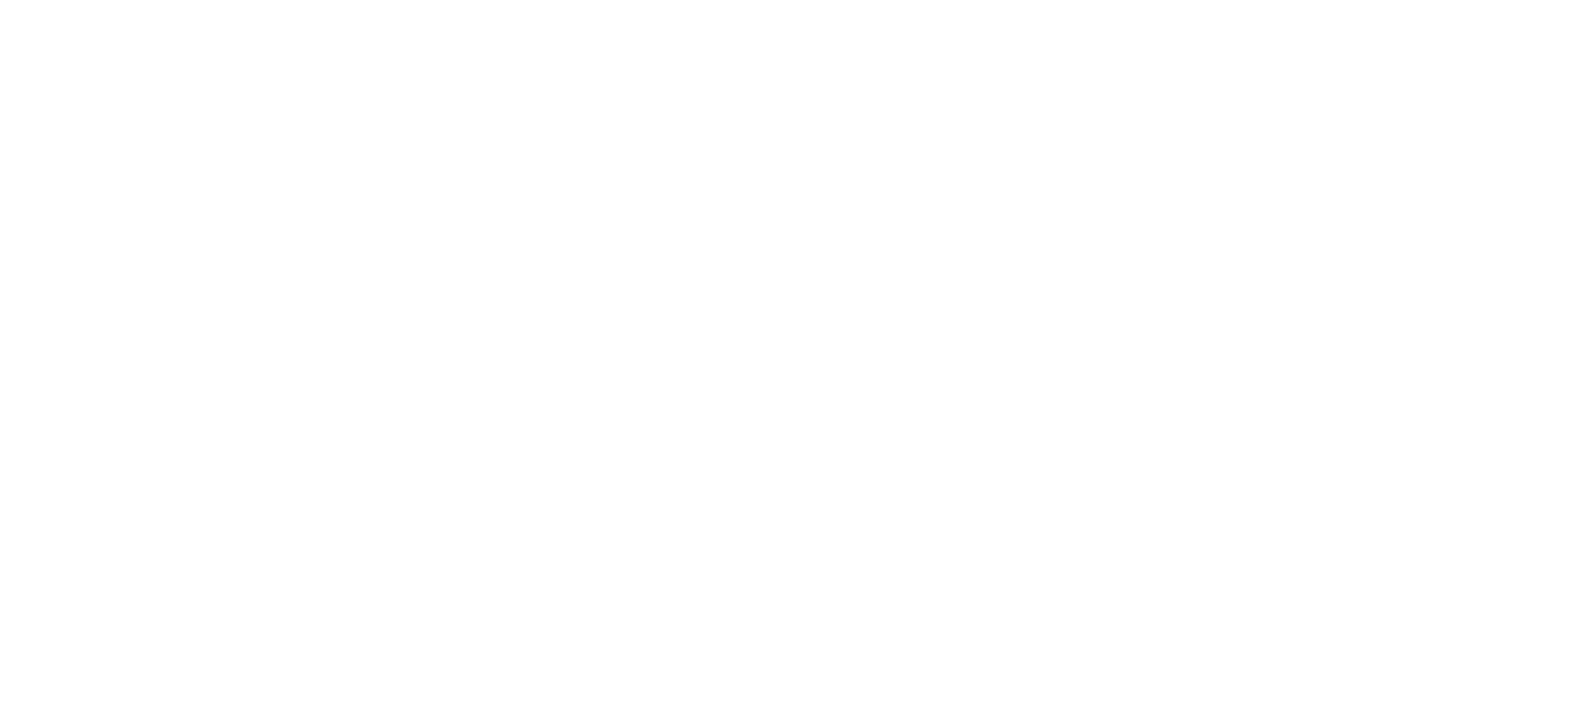 BOE Varitronix logo for dark backgrounds (transparent PNG)